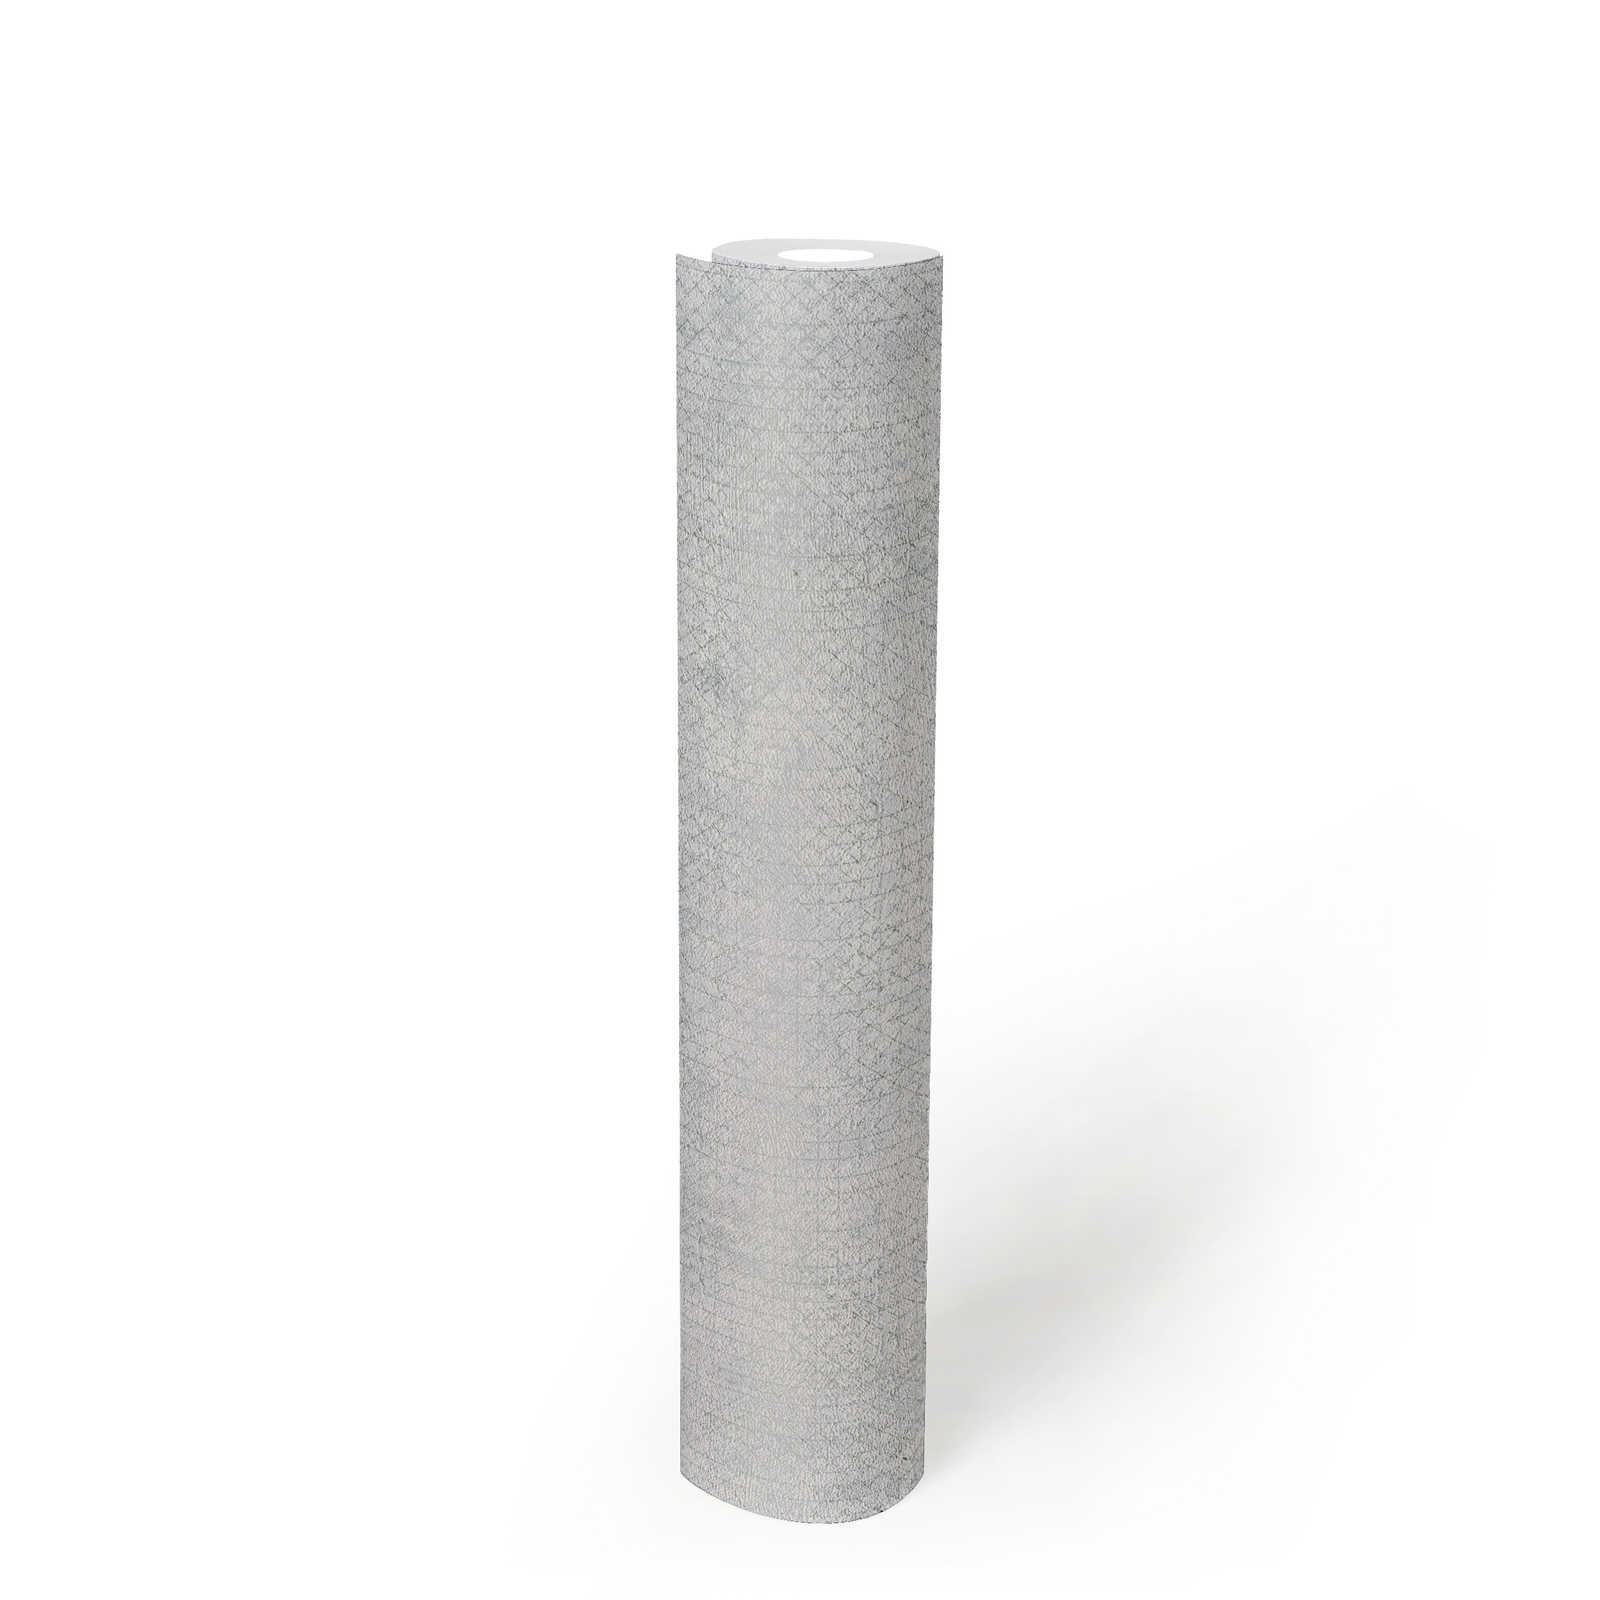             Papel pintado gris claro con motivos metálicos - Metálico, Gris
        